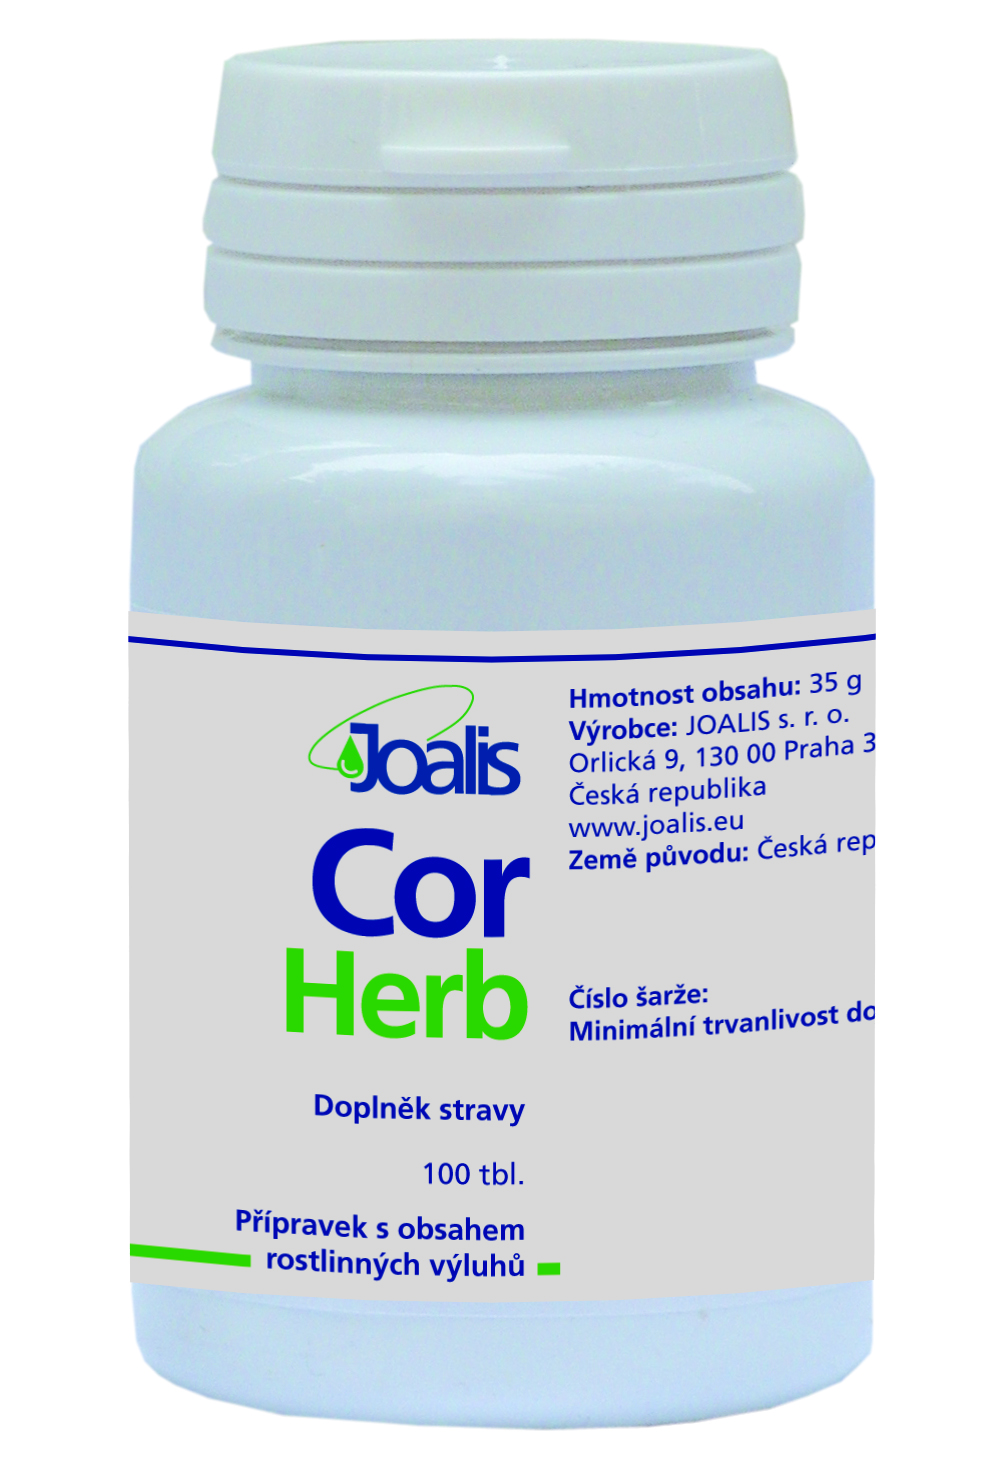 CorHerb 50ml Přírodní tablety se směsí rostlinných výluhů.  Joalis doplněk stravy